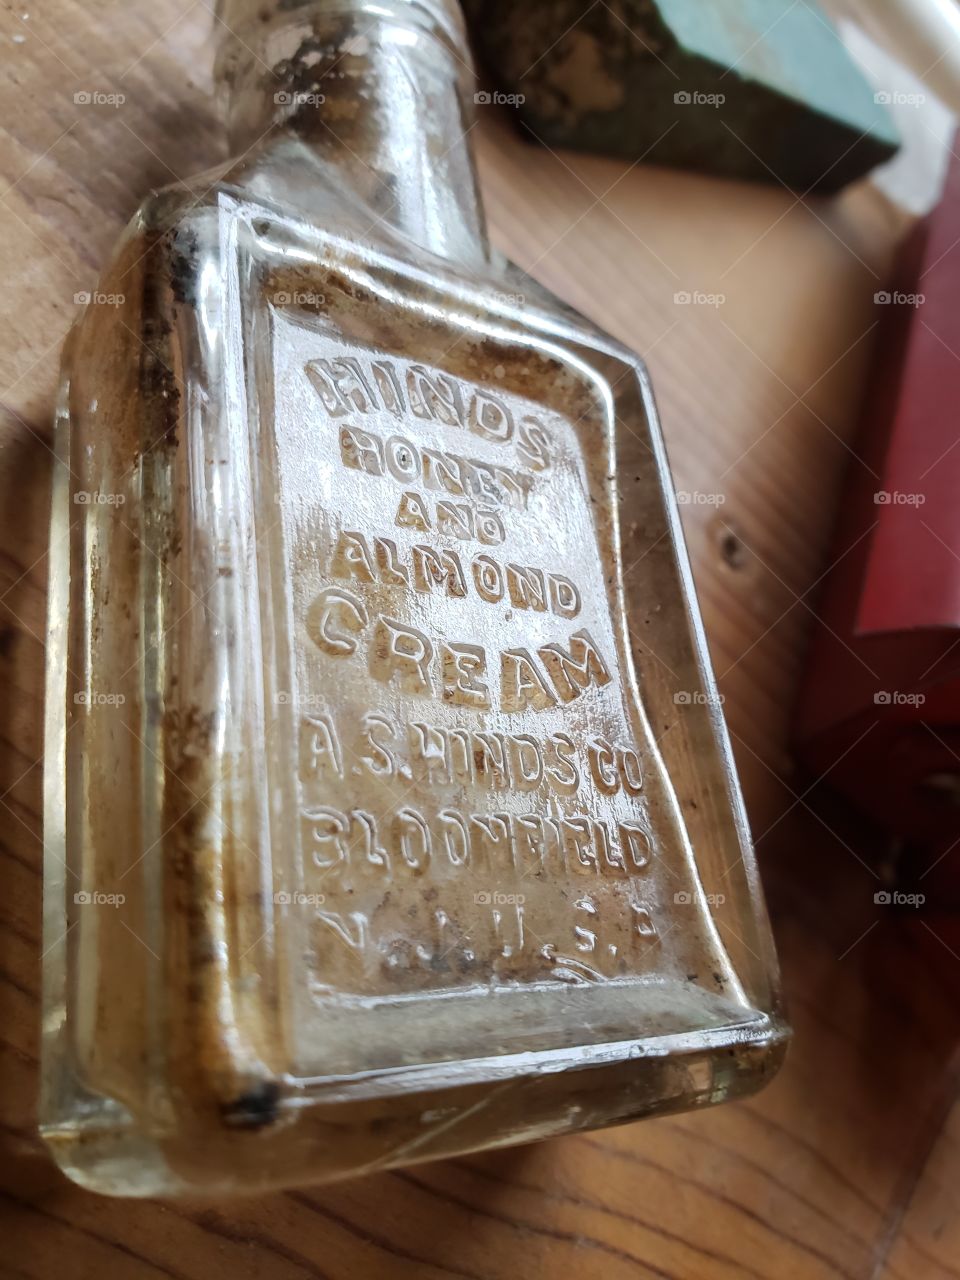 Vintage bottle